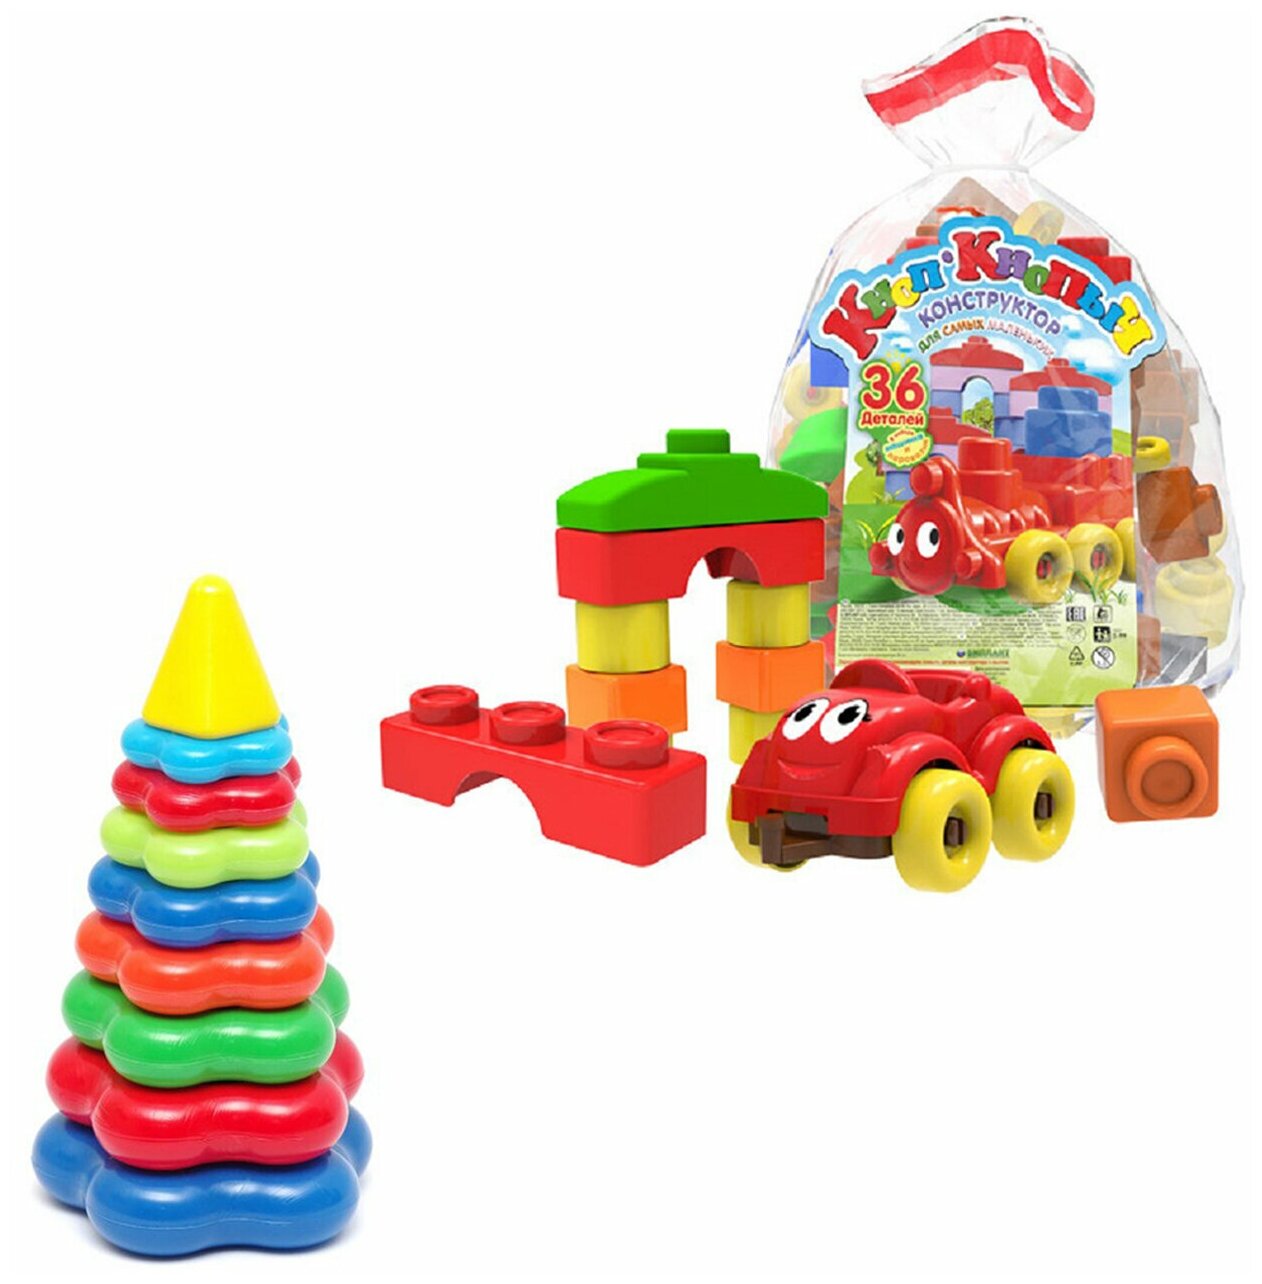 Развивающие игрушки для малышей набор Пирамидка детская большая + Конструктор "Кноп-Кнопыч" 36 дет.